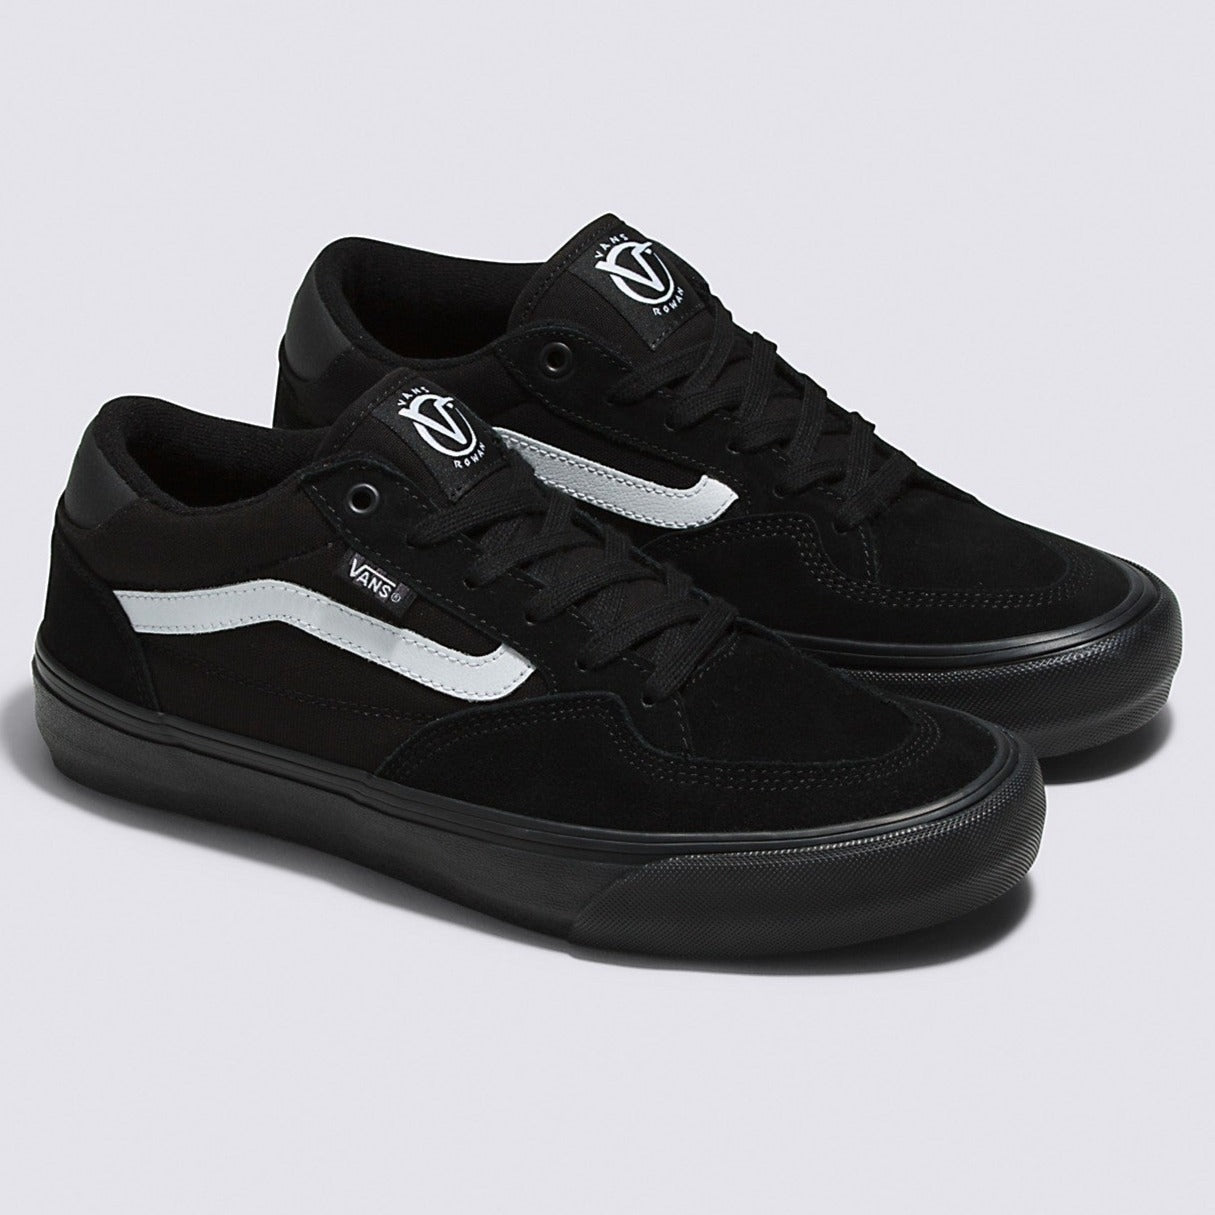 Black/Black/White Rowan Vans Skateboard Shoe